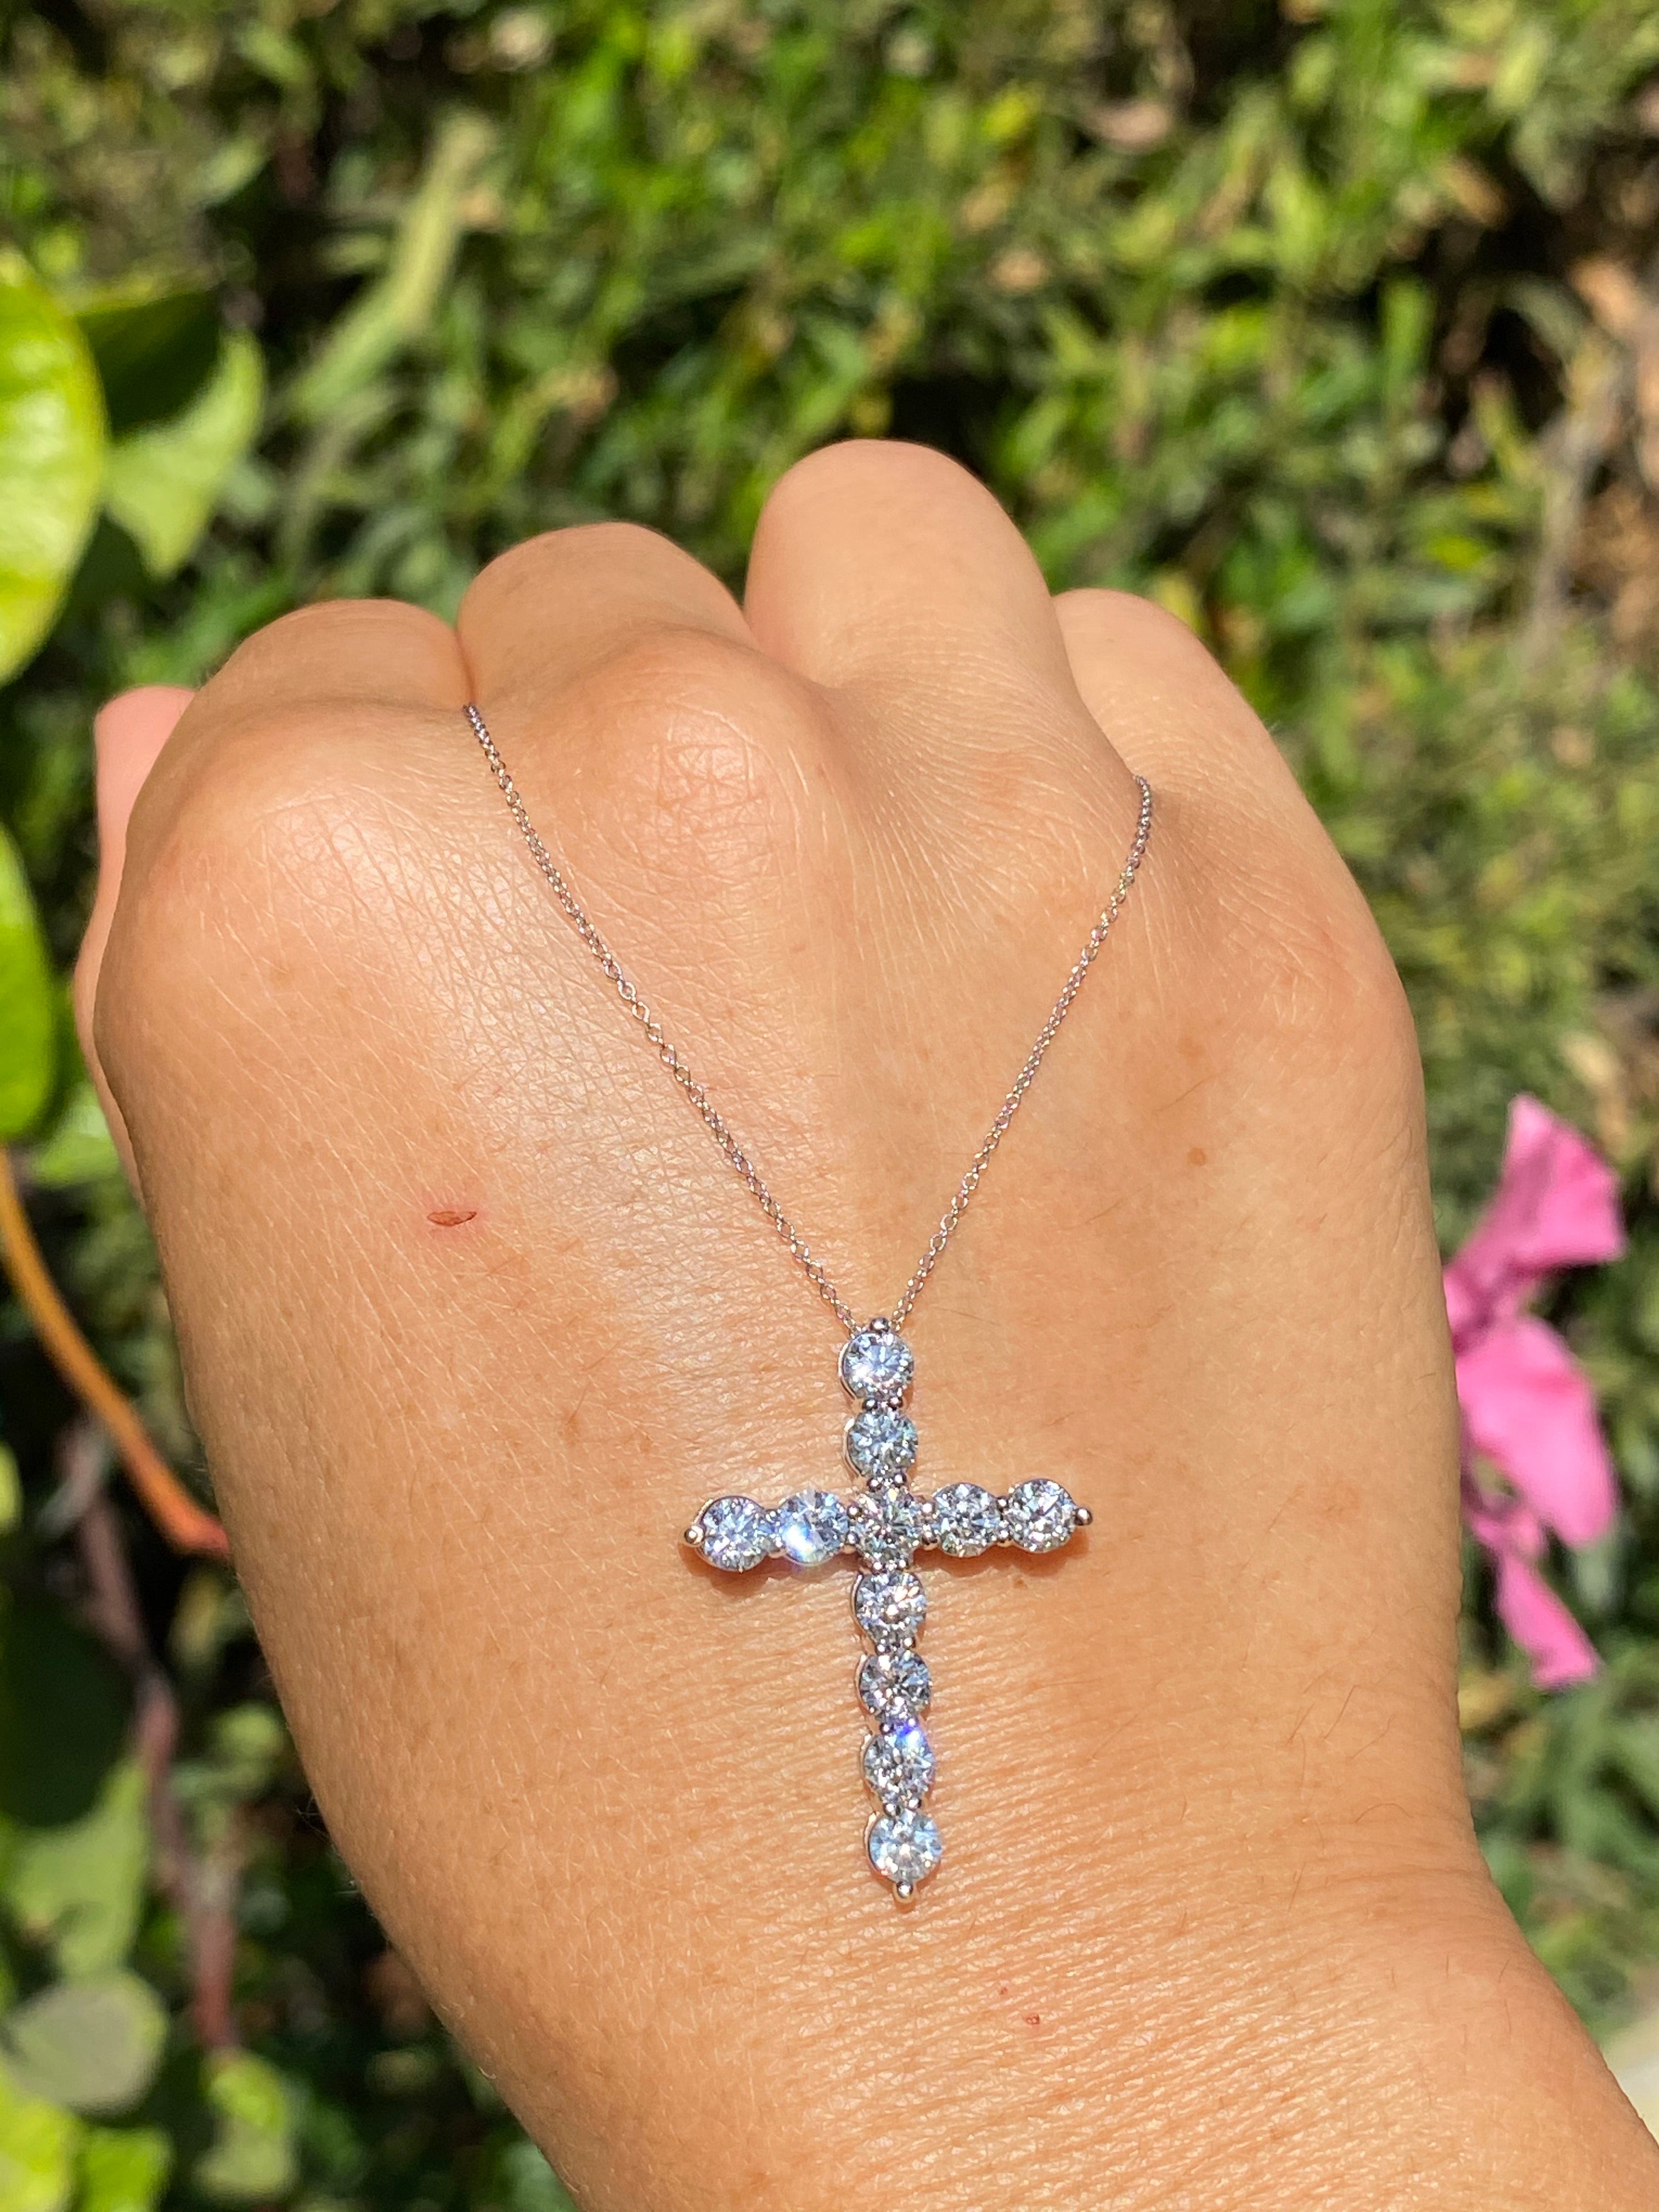 Edgy Diamond Cross Necklace | Unique Jewelry NYC